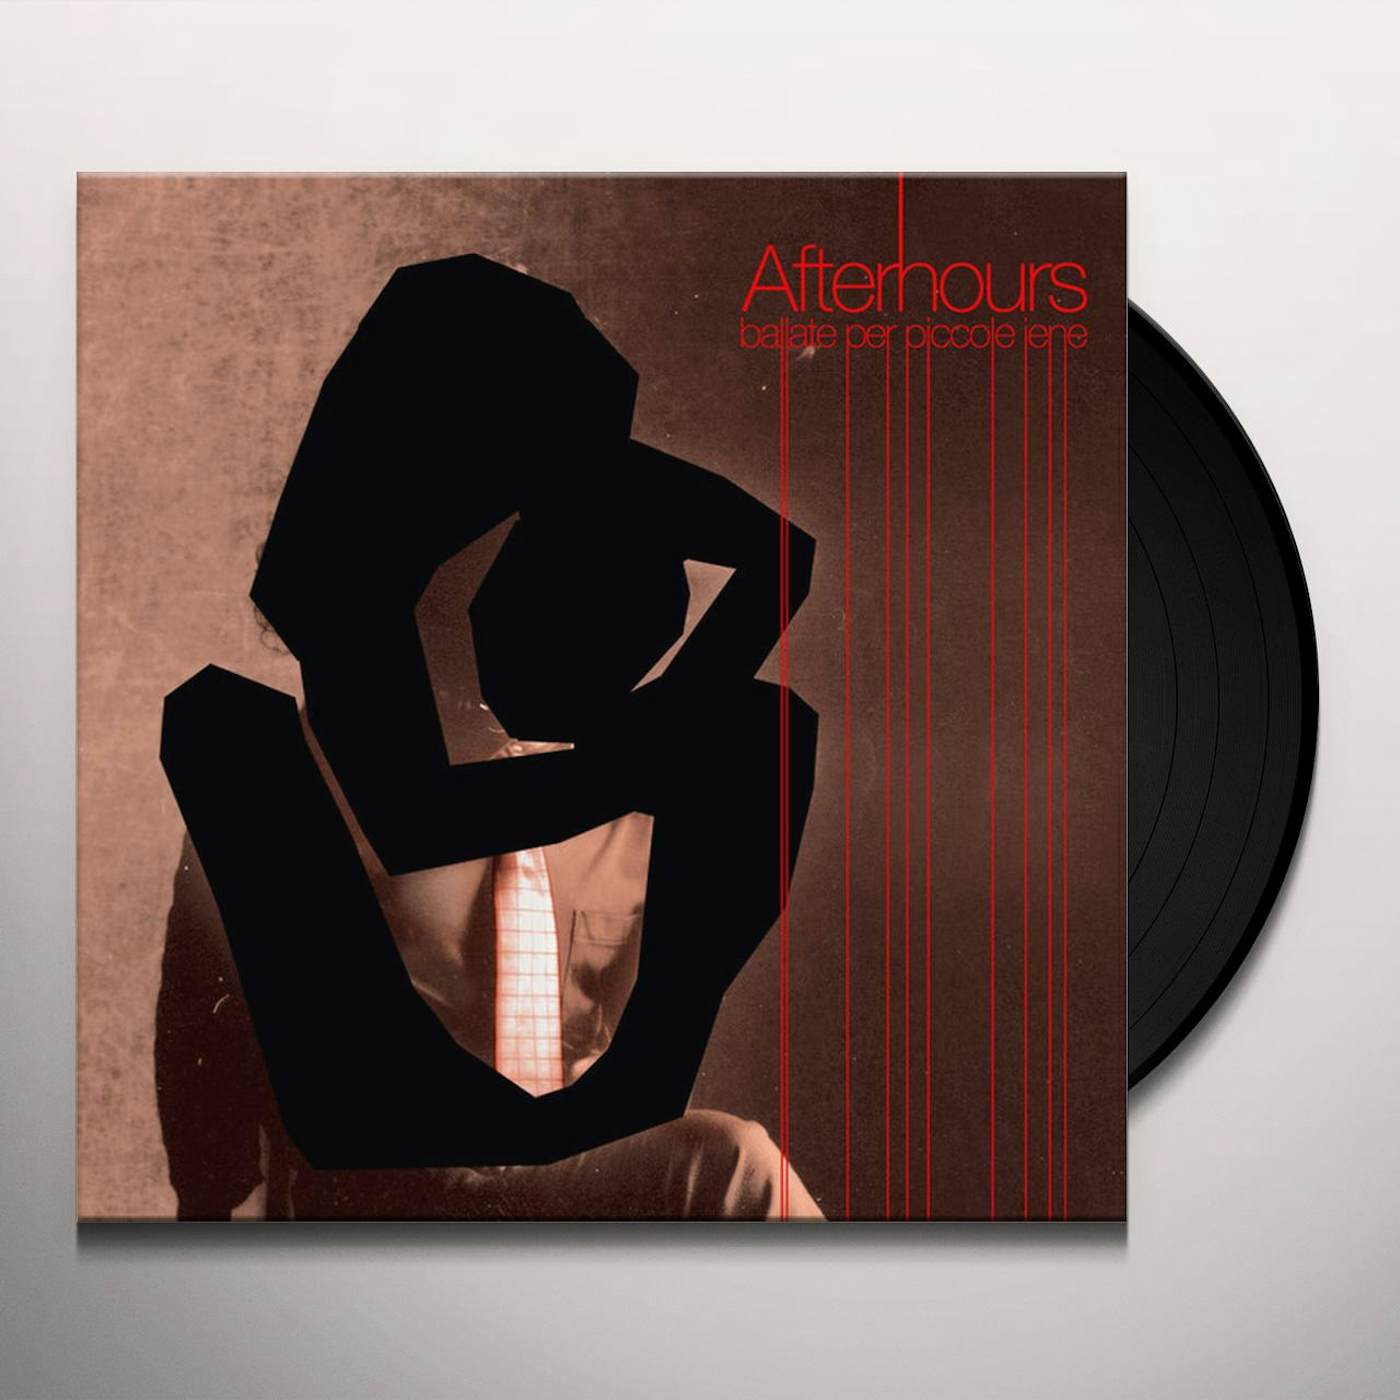 Afterhours Ballate Per Piccole Iene Vinyl Record